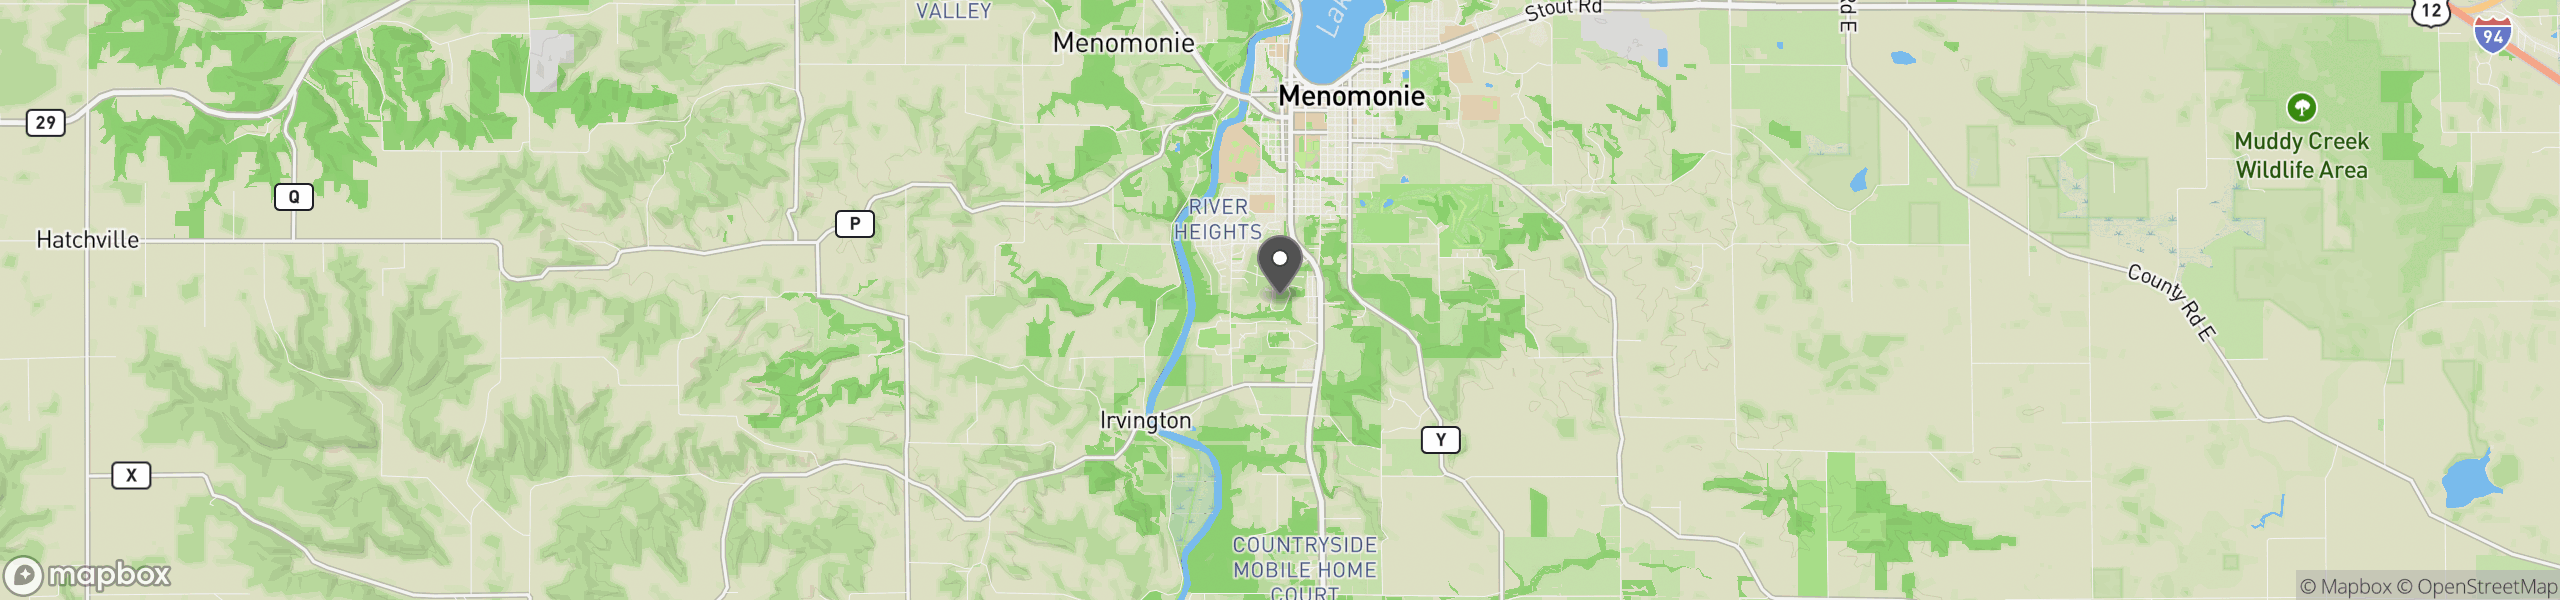 Menomonie, WI 54751